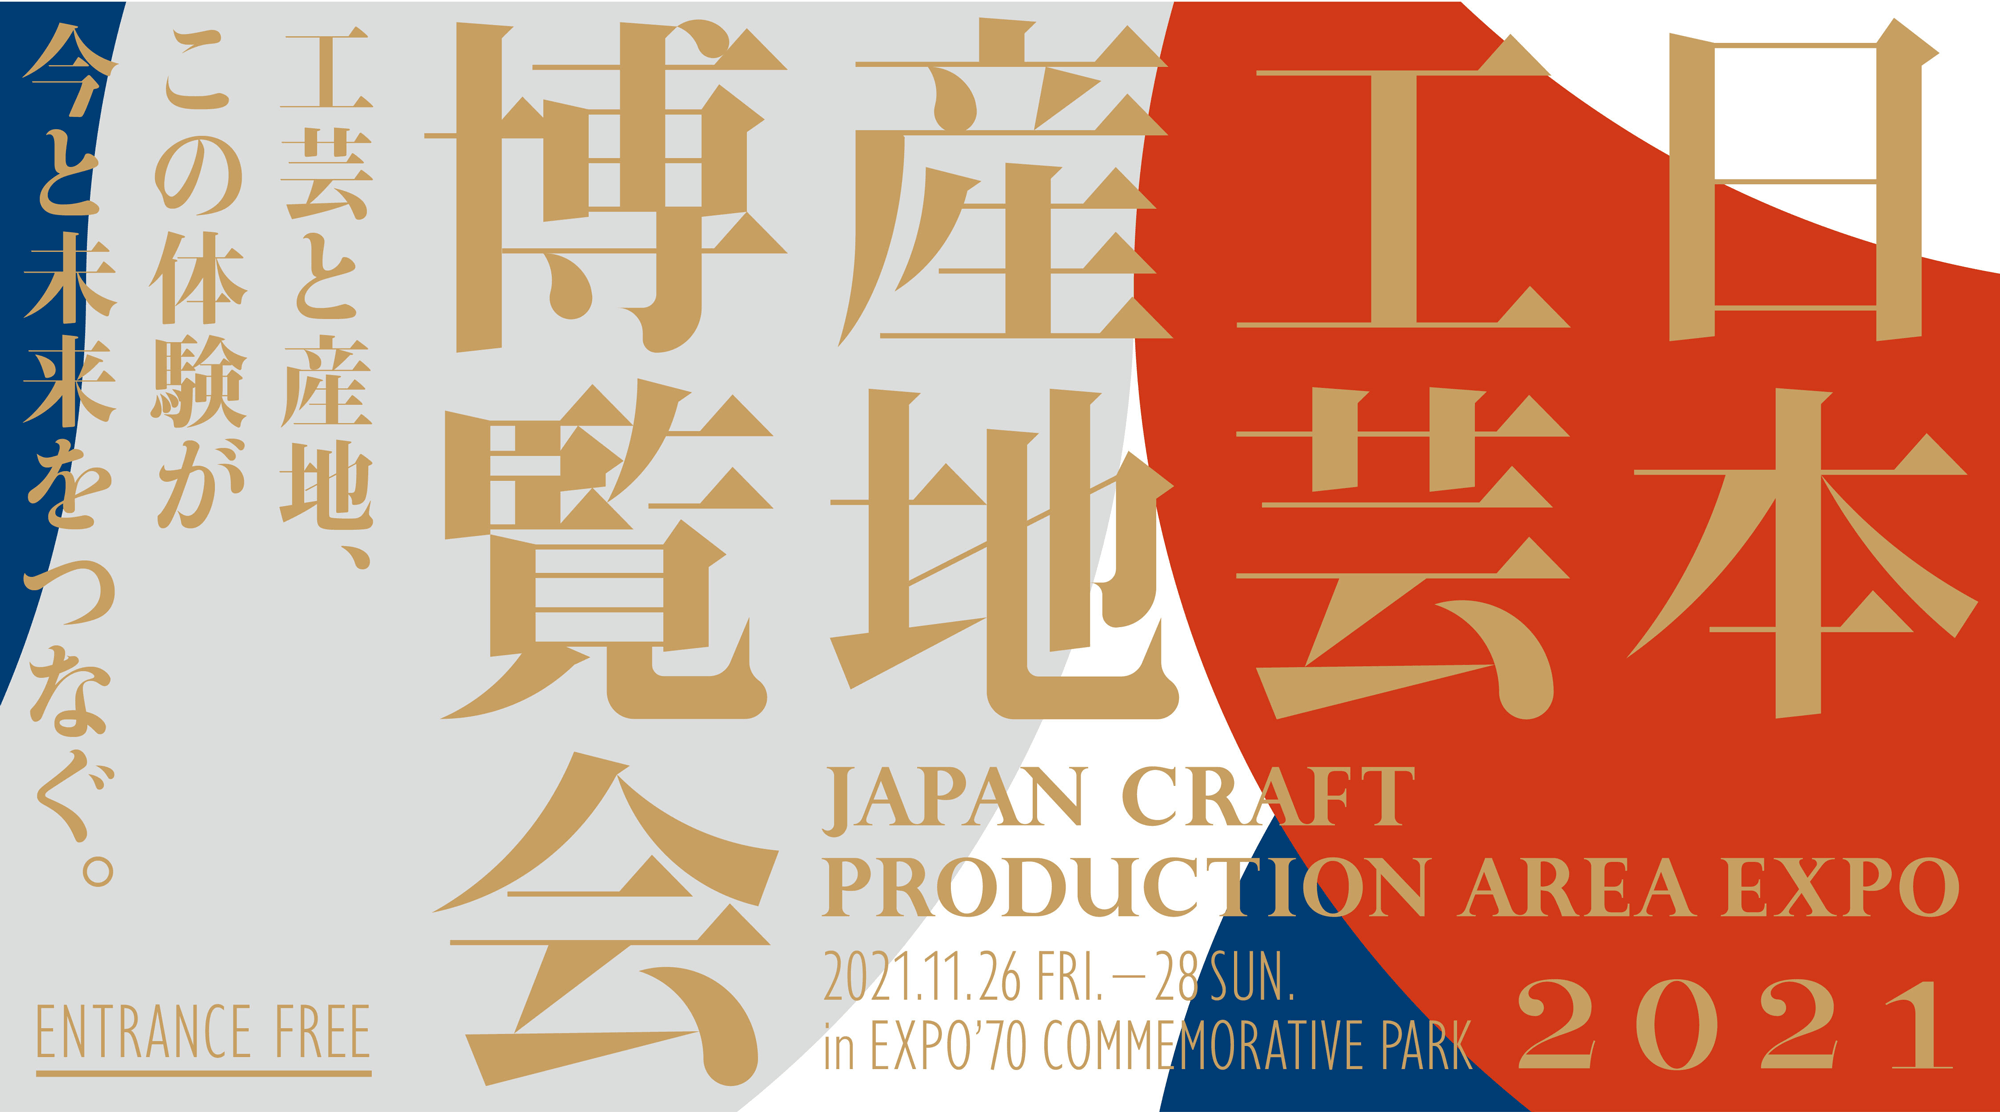 日本工芸産地博覧会 JAPAN CRAFT PRODUCTION AREA EXPO